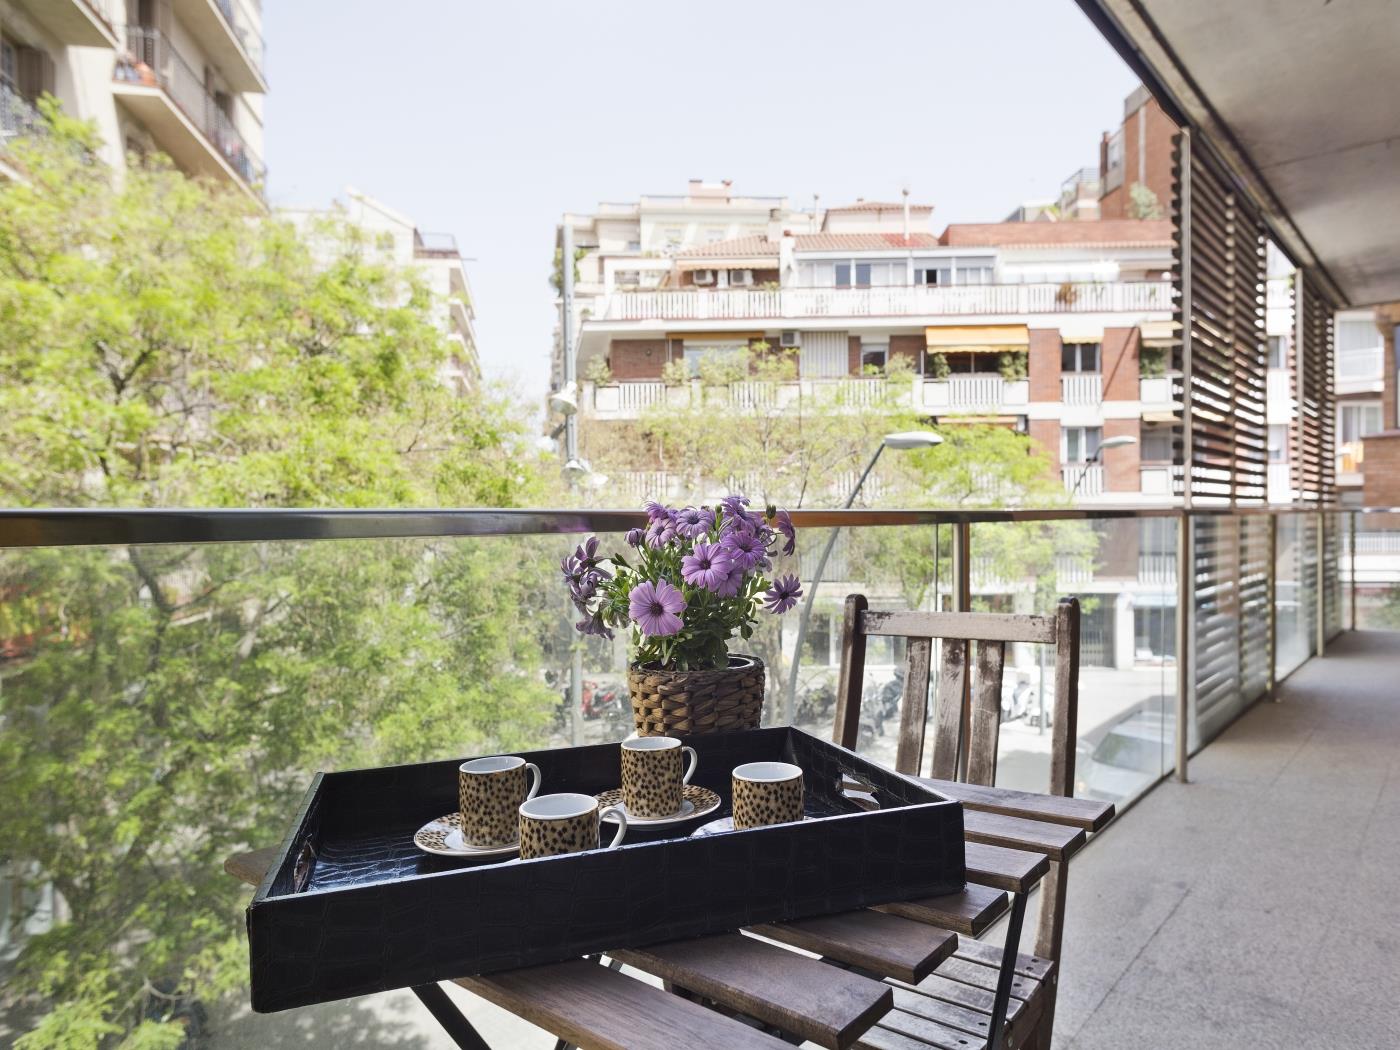 Location d'appartements d'entreprises à Barcelone pour 6 - My Space barcelona Appartements